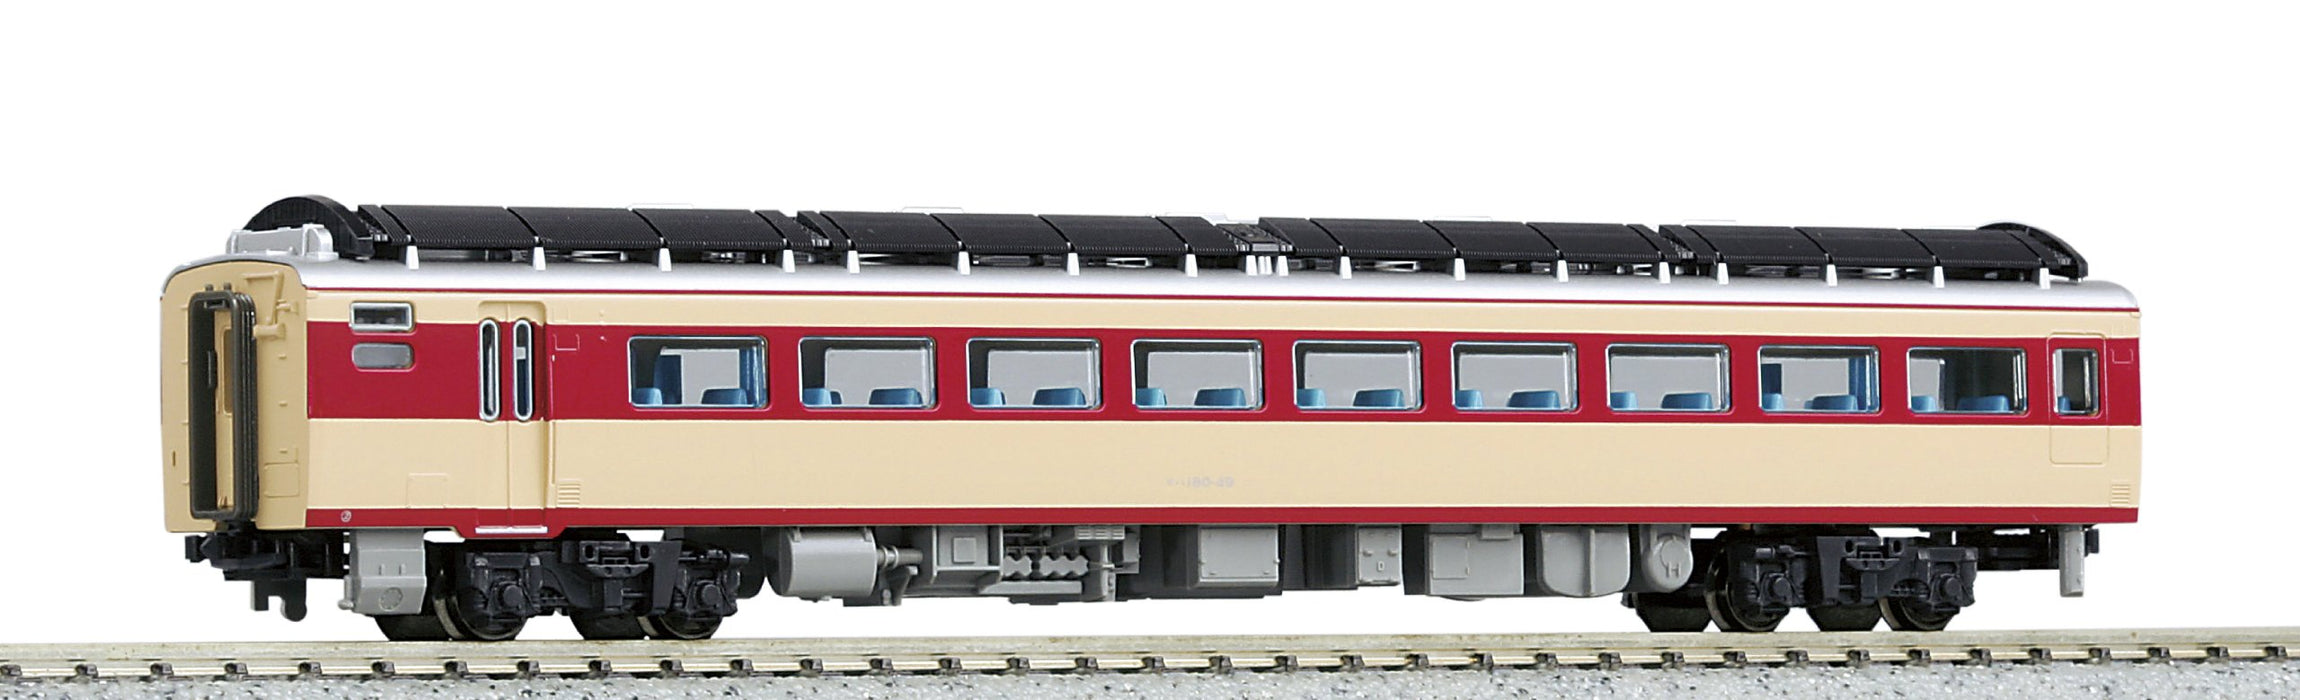 Kato Kiha180 T 6083 Voiture diesel – Modèle ferroviaire à voie N